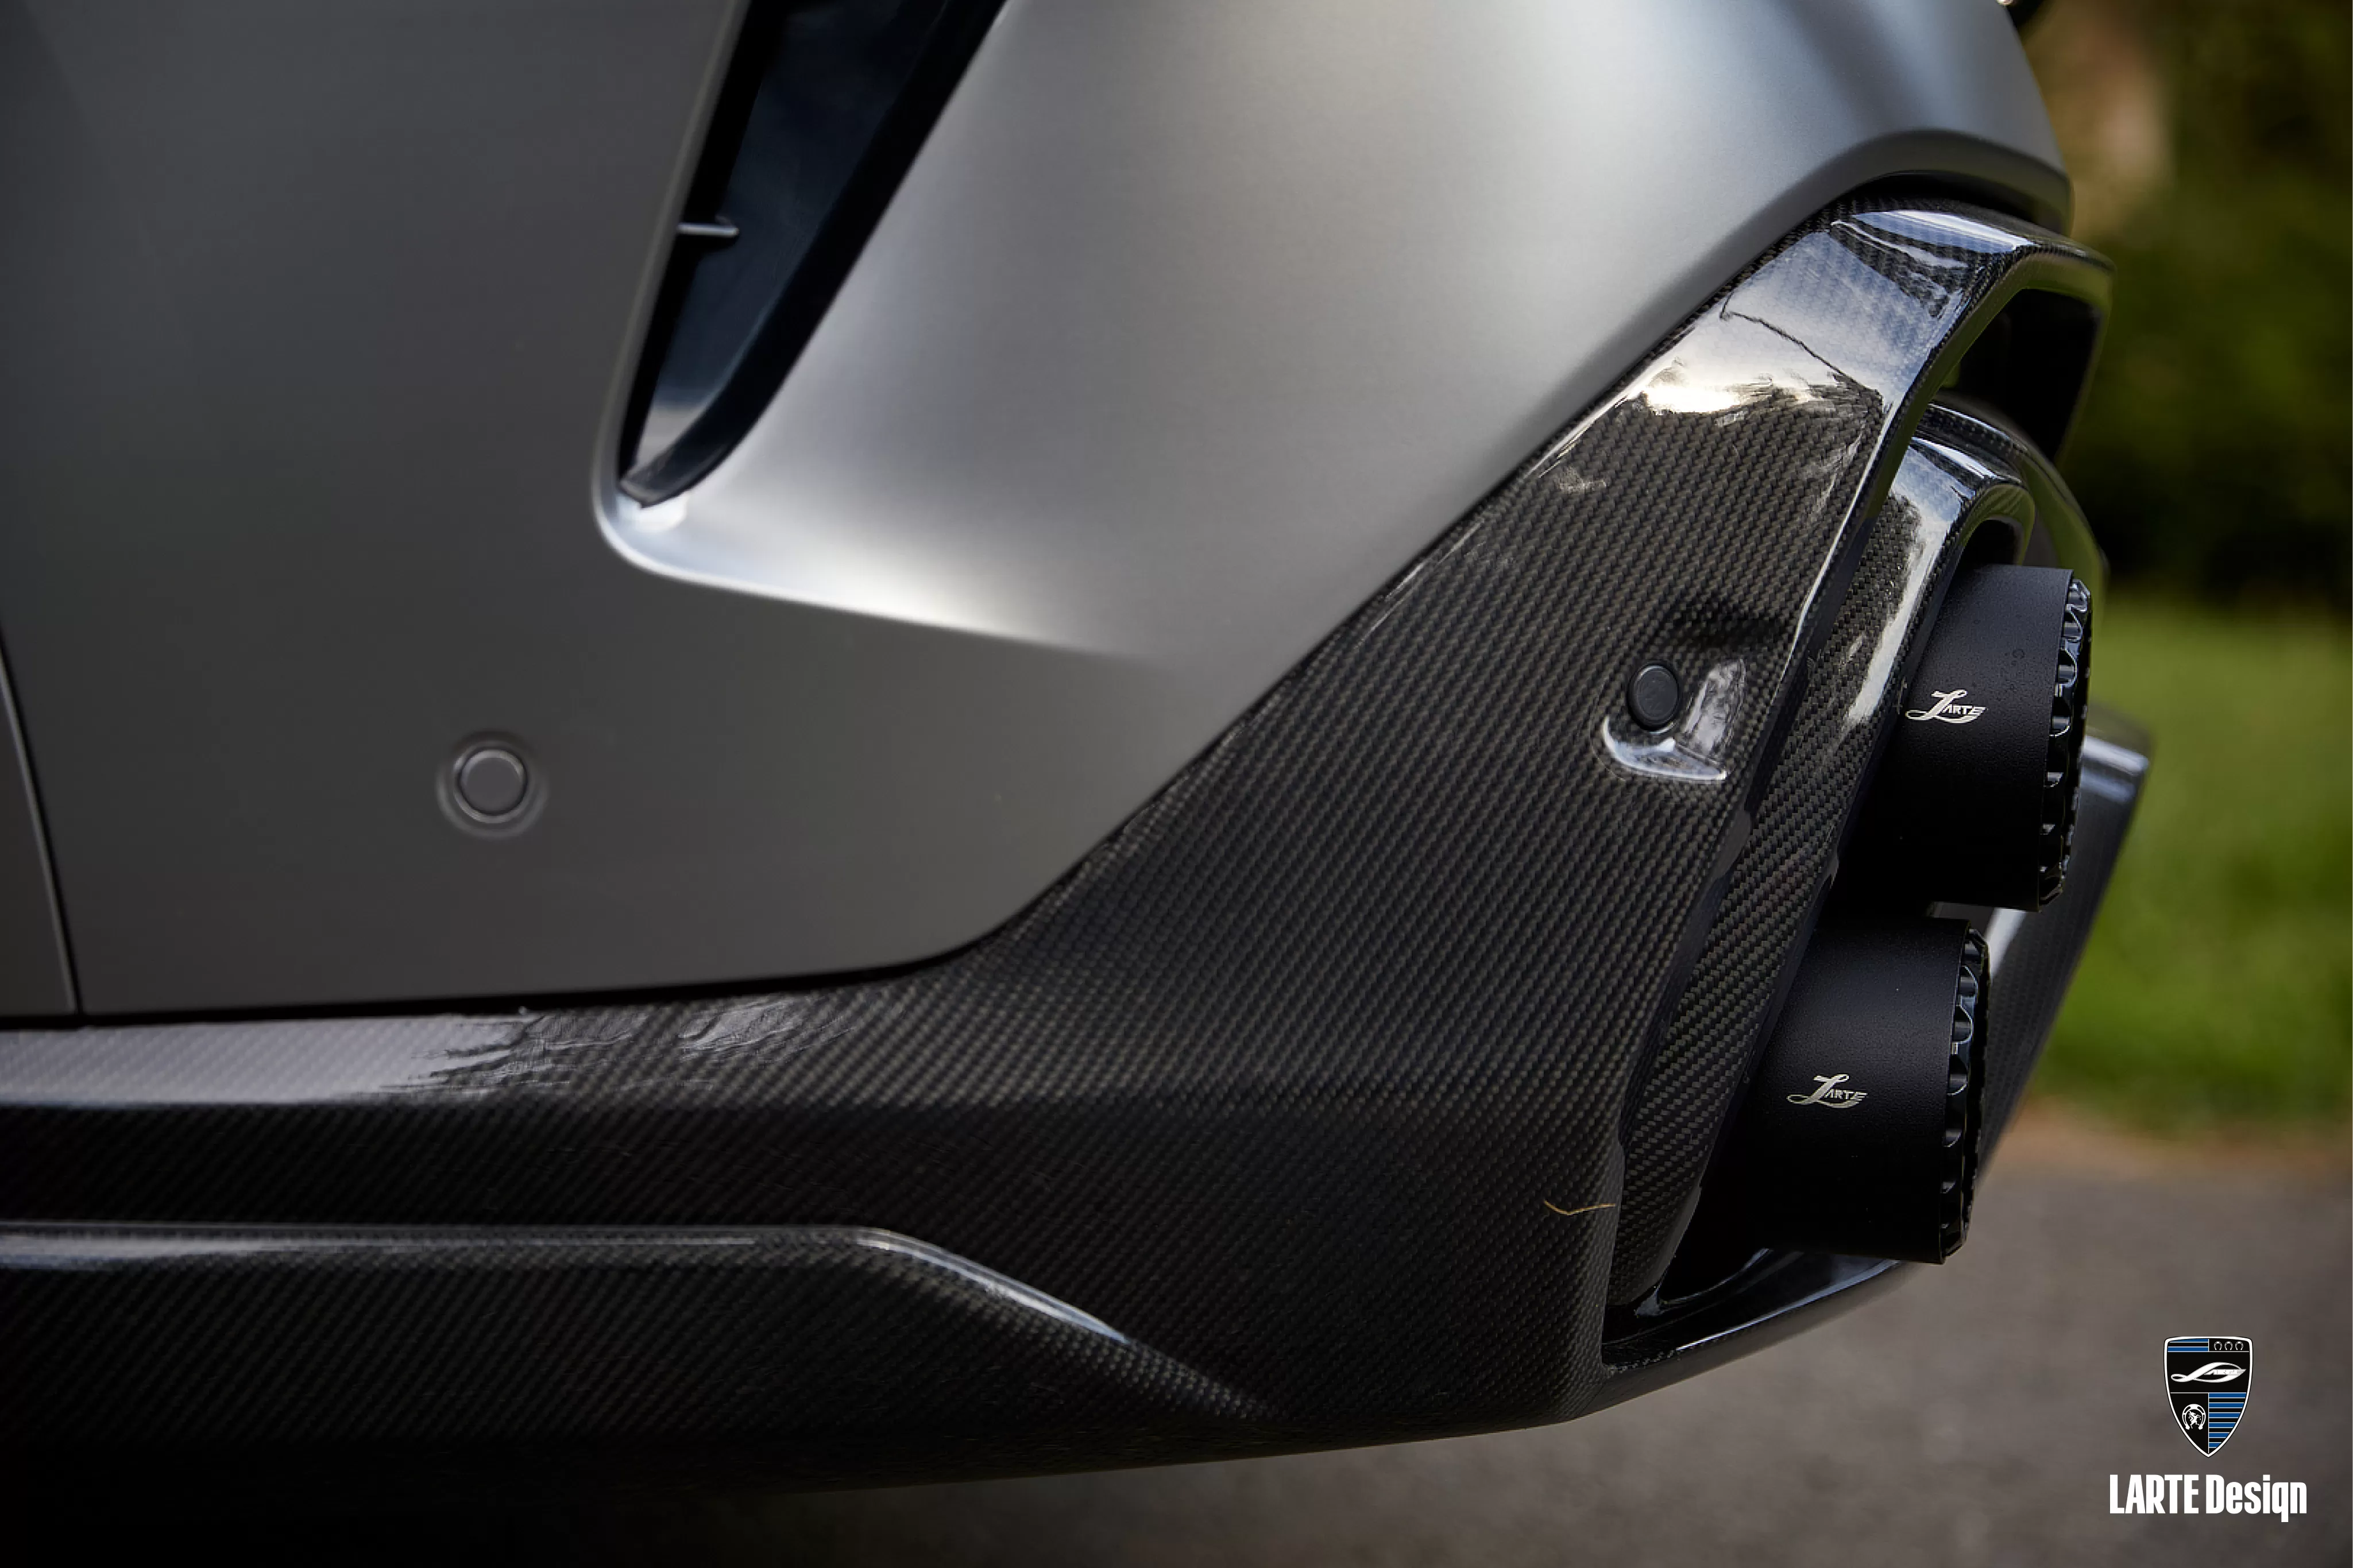 New aerodynamic kit Rear Bumper Diffuser for BMW X6 G06 M sport M50d